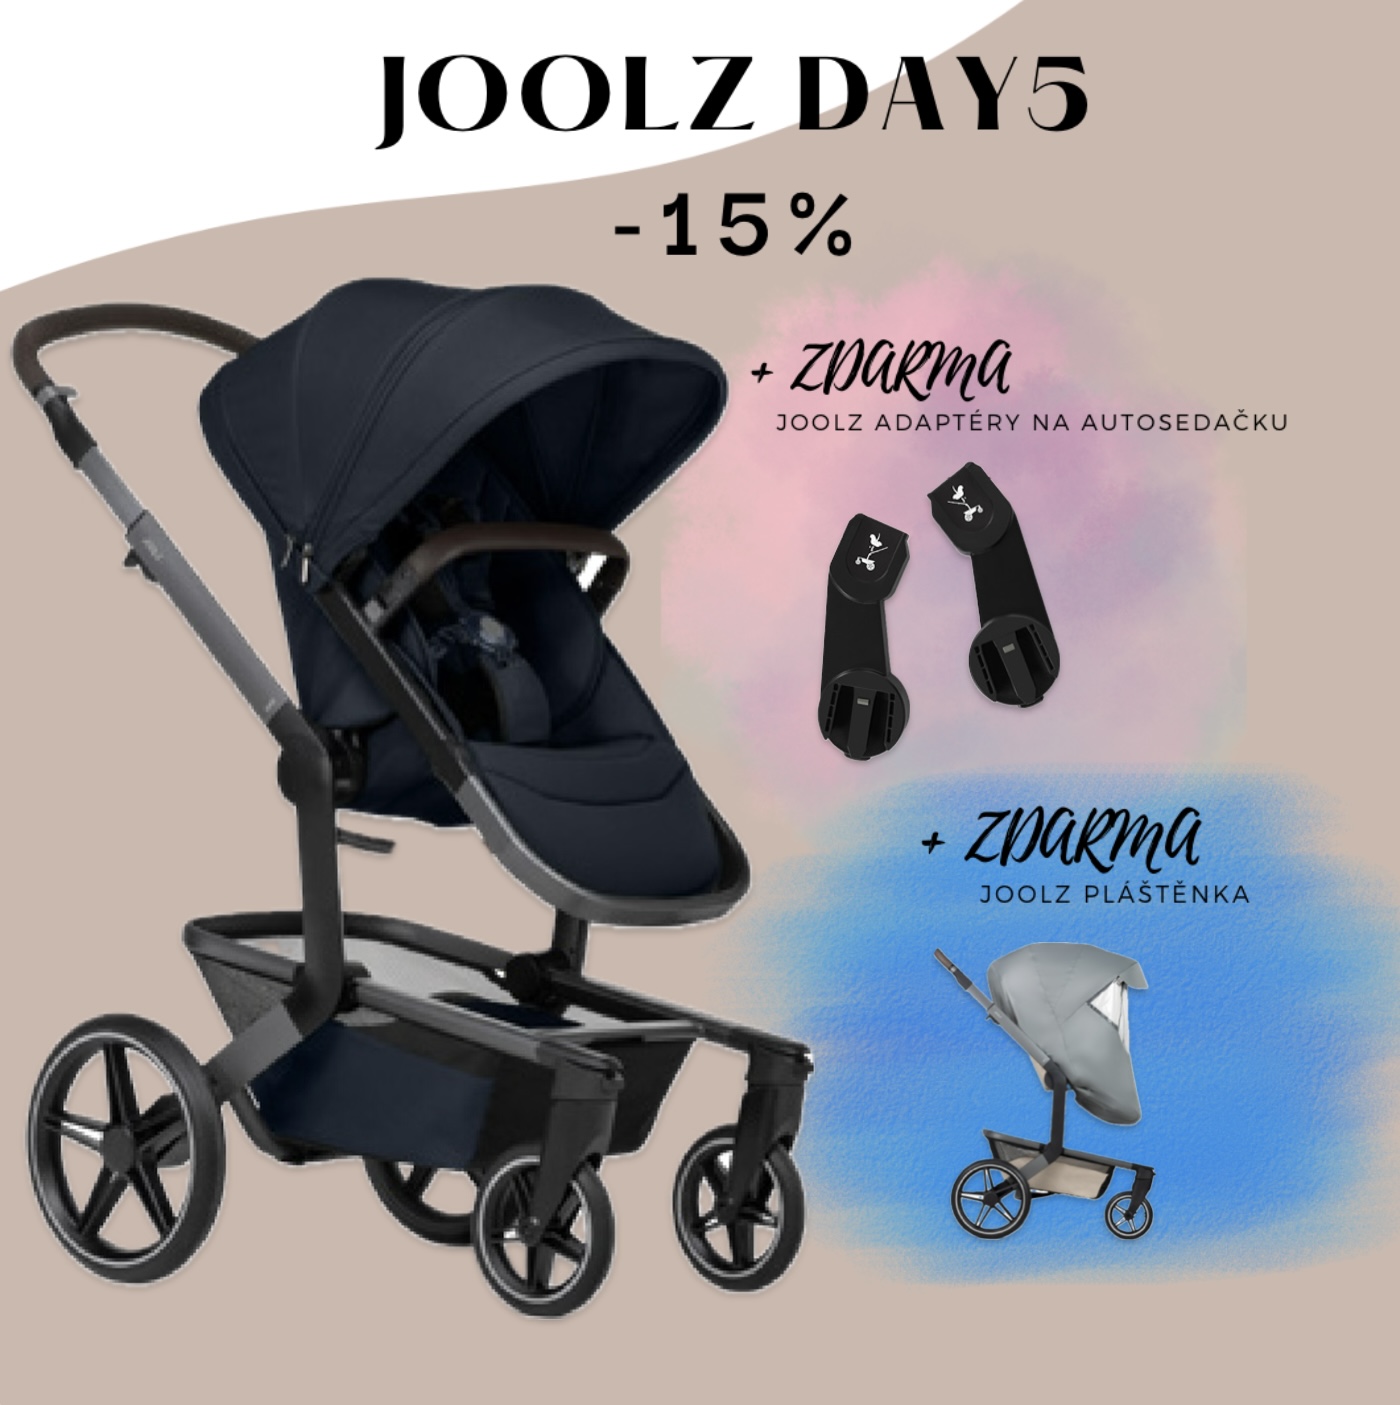 Joolz Day5 - Navy blue, kompletní set + pláštěnka a adaptéry na autosedačku jako DÁREK